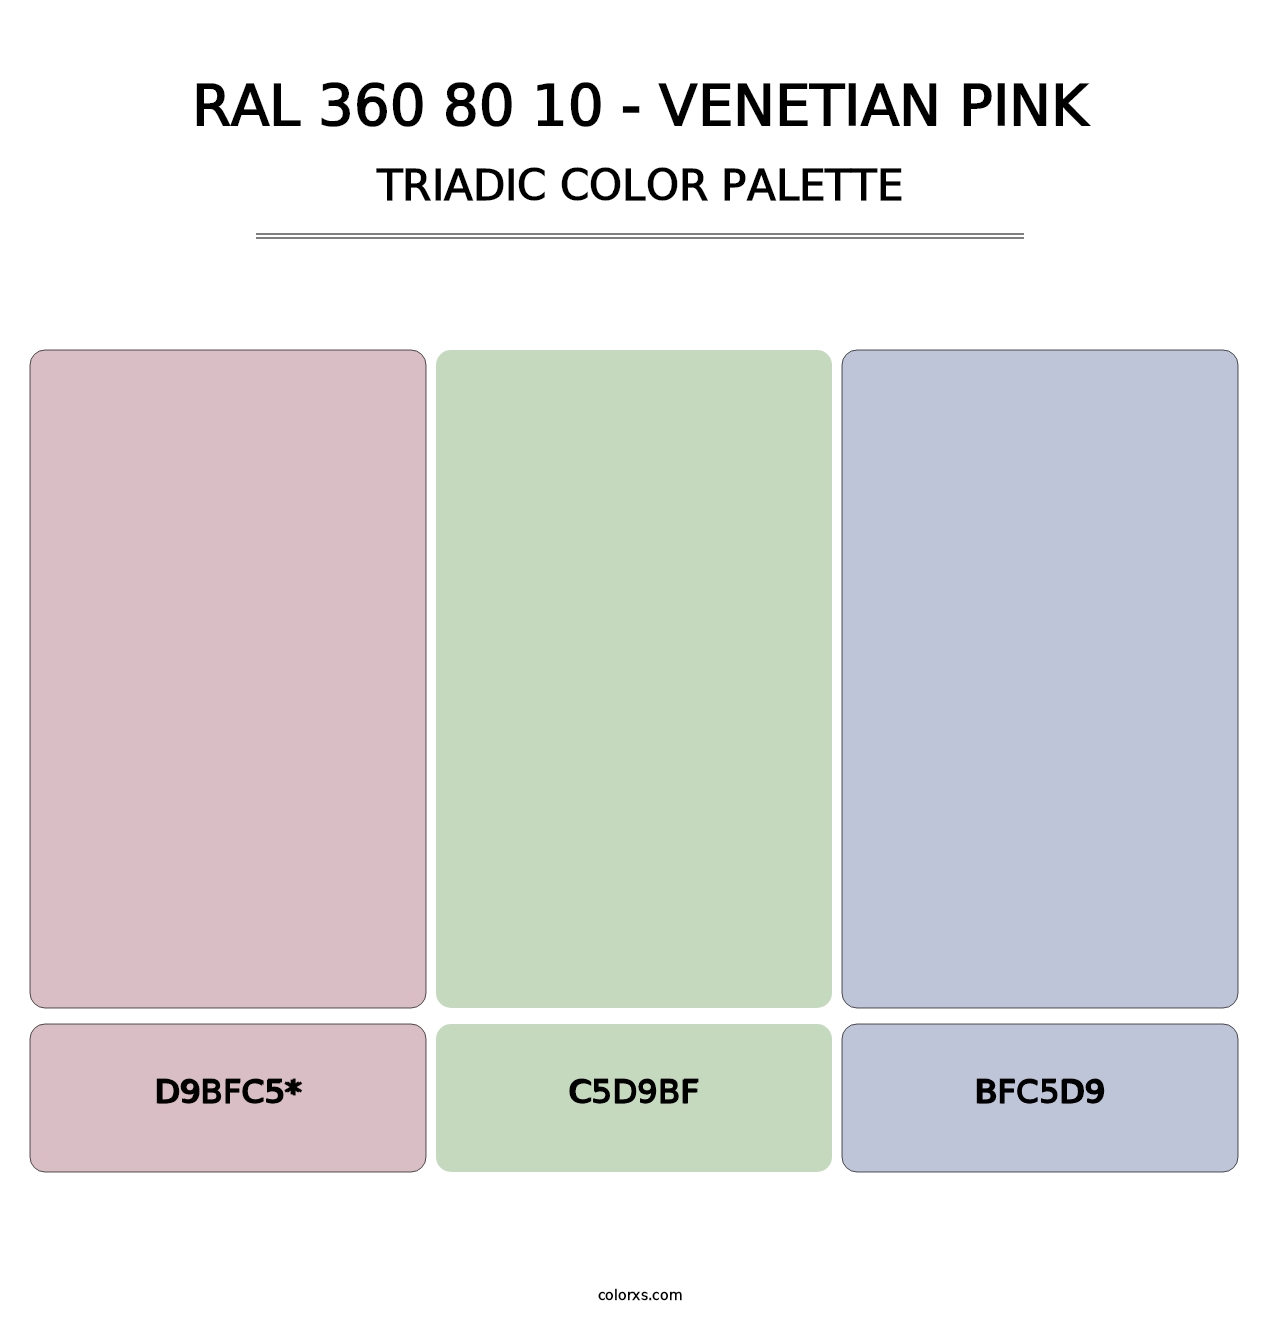 RAL 360 80 10 - Venetian Pink - Triadic Color Palette